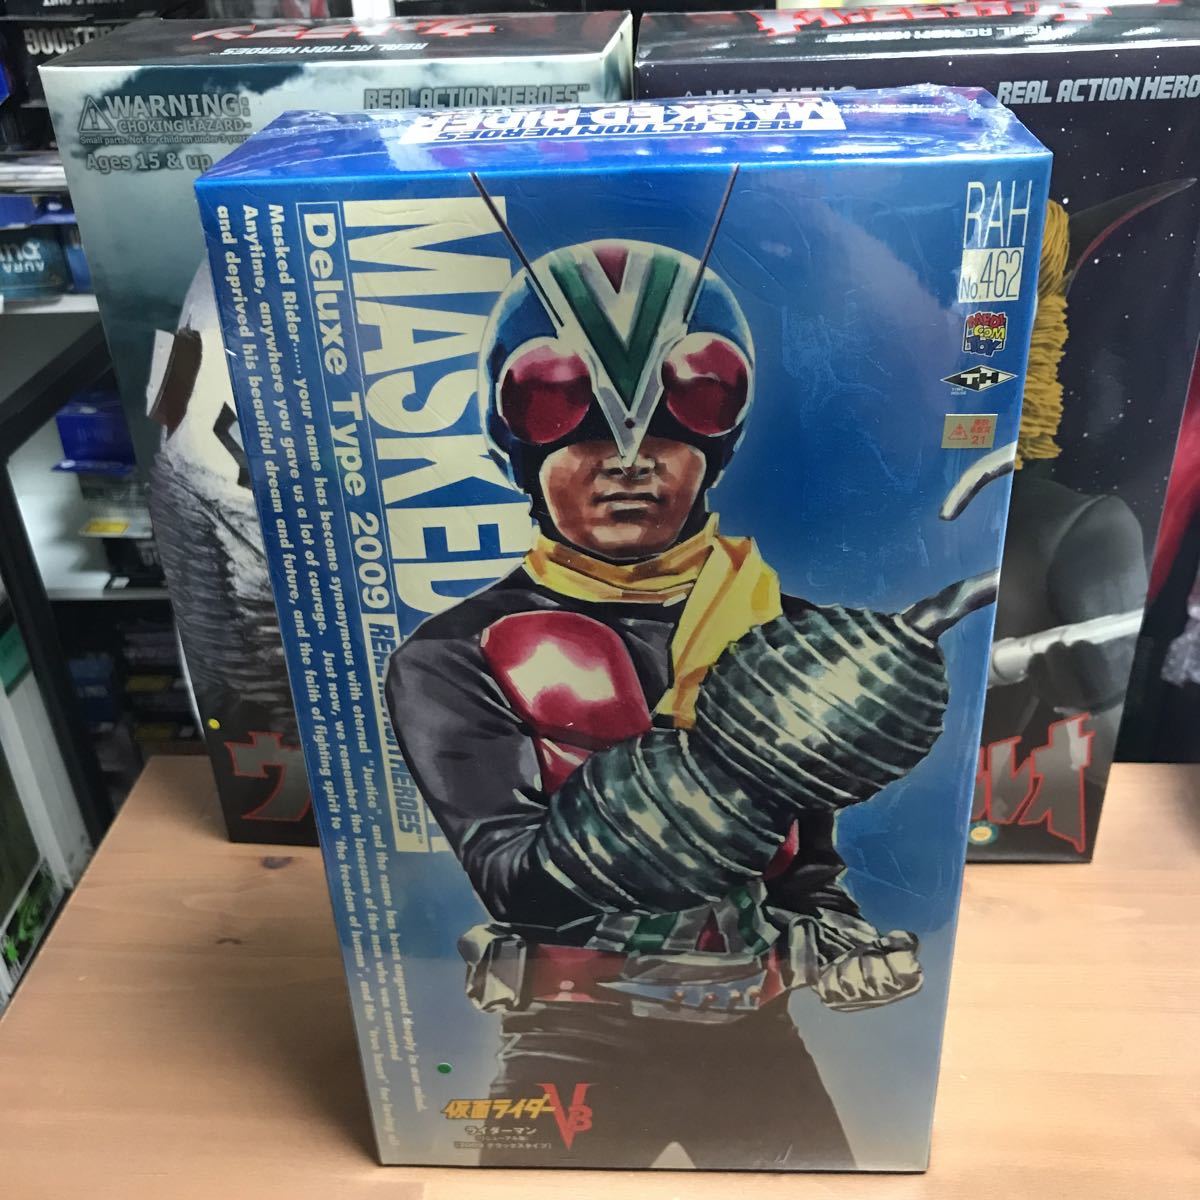 isnoo[ нераспечатанный ]meti com игрушка настоящий action герой zRAH 462 Kamen Rider V3 Riderman обновленный версия 2009 Deluxe модель 